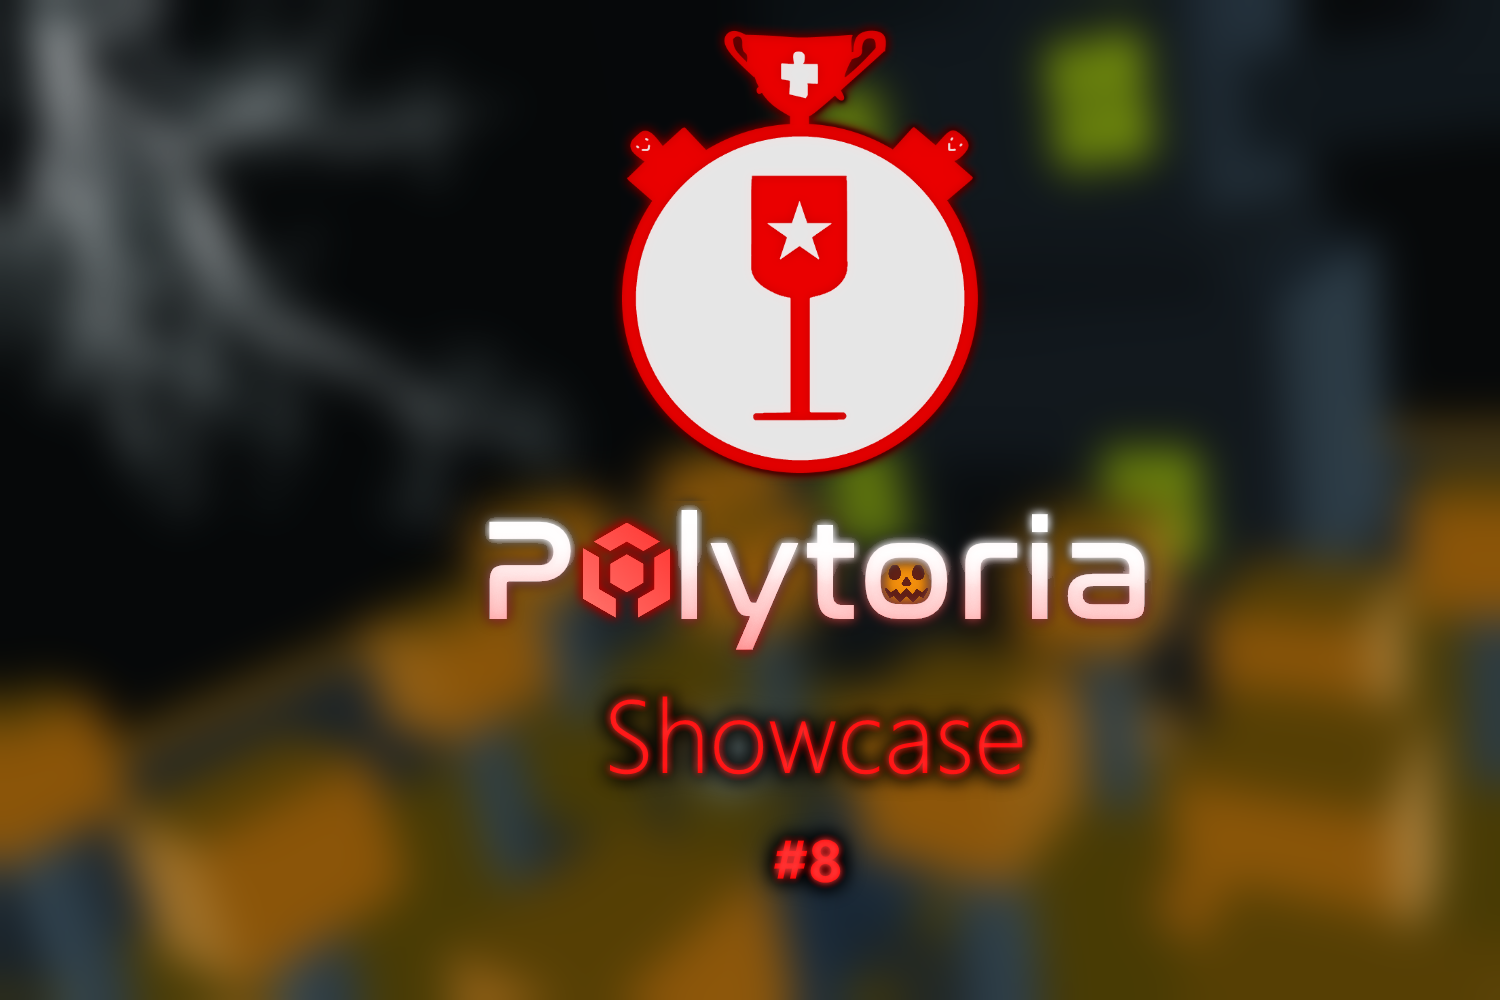 Polytoria Showcase #8